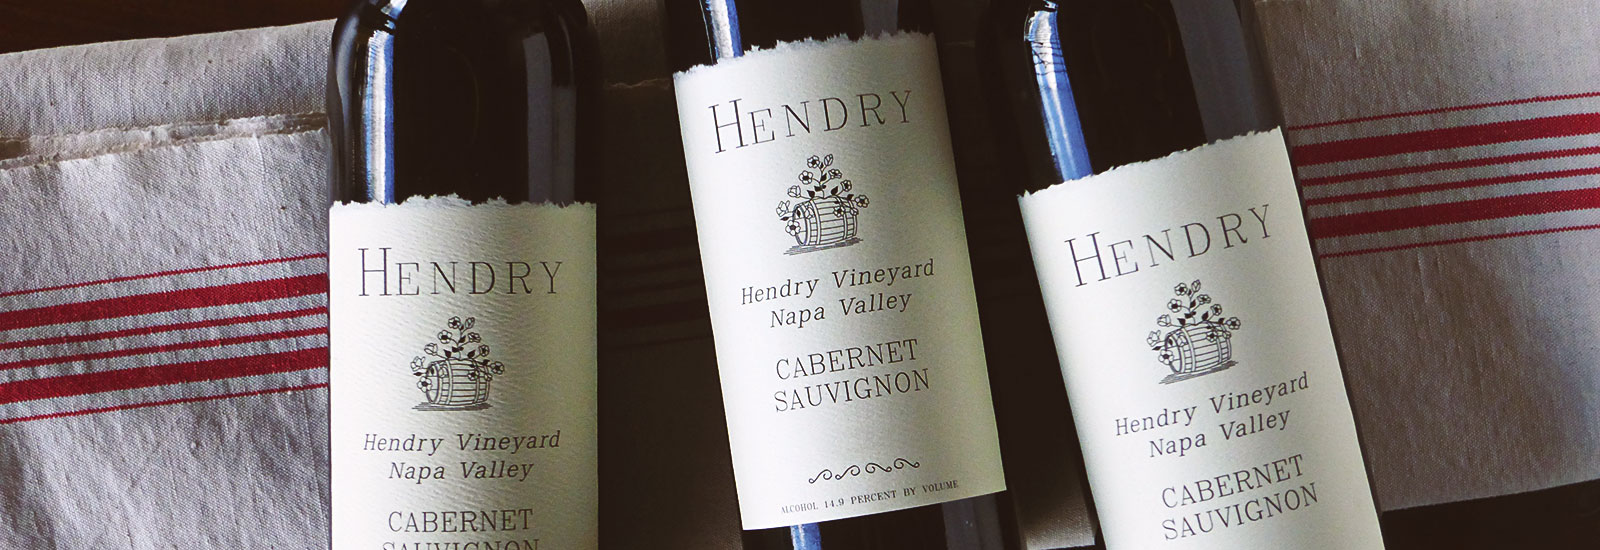 Hendry 2019 Blocks 7 & 22 Napa Valley Zinfandel – Taylor's Wine Shop